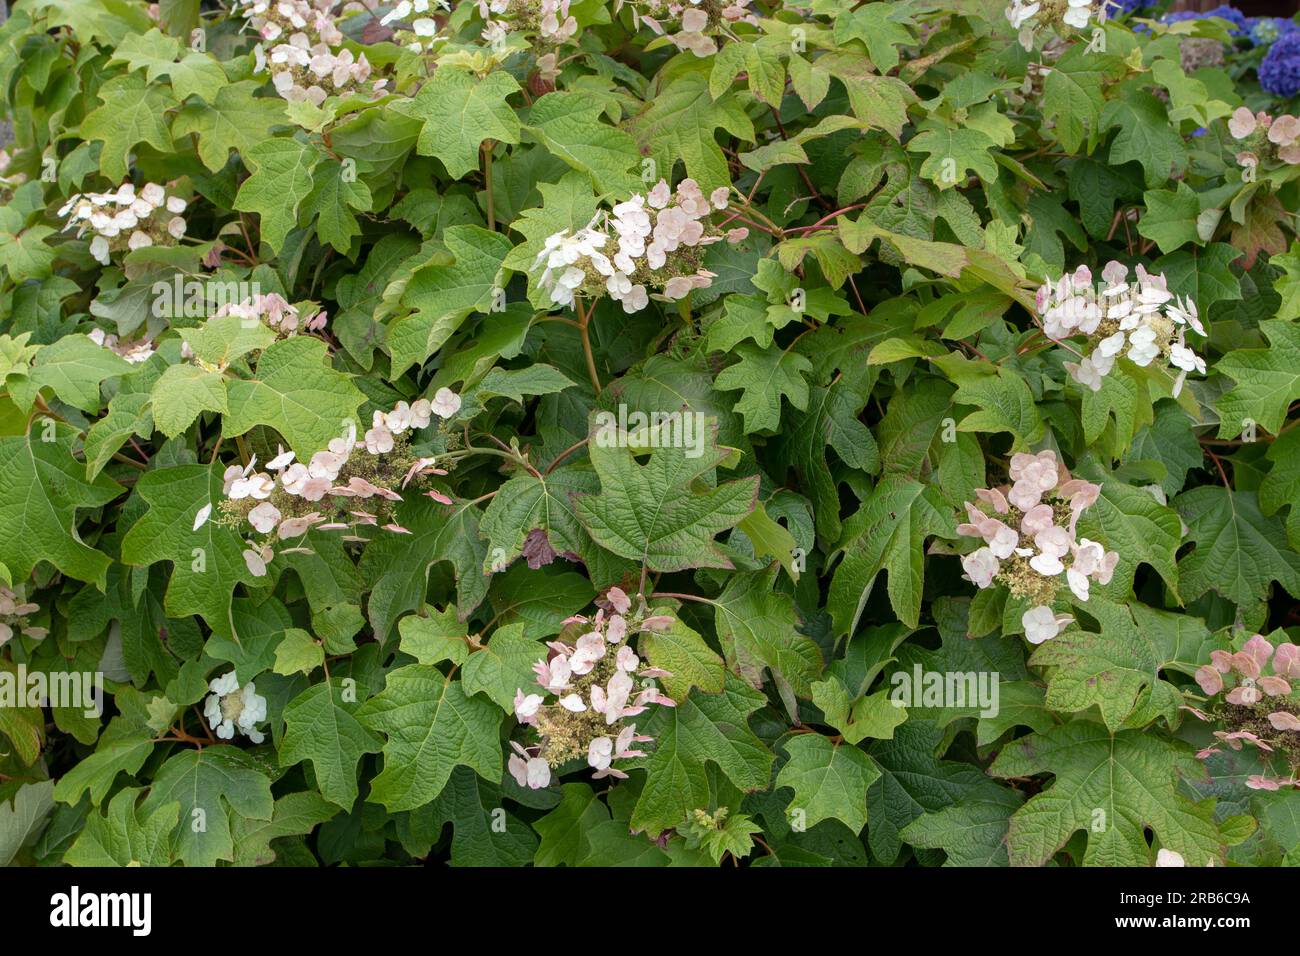 Hydrangea quercifolia ou hortensia de feuilles de chêne avec des fleurs blanches. Banque D'Images